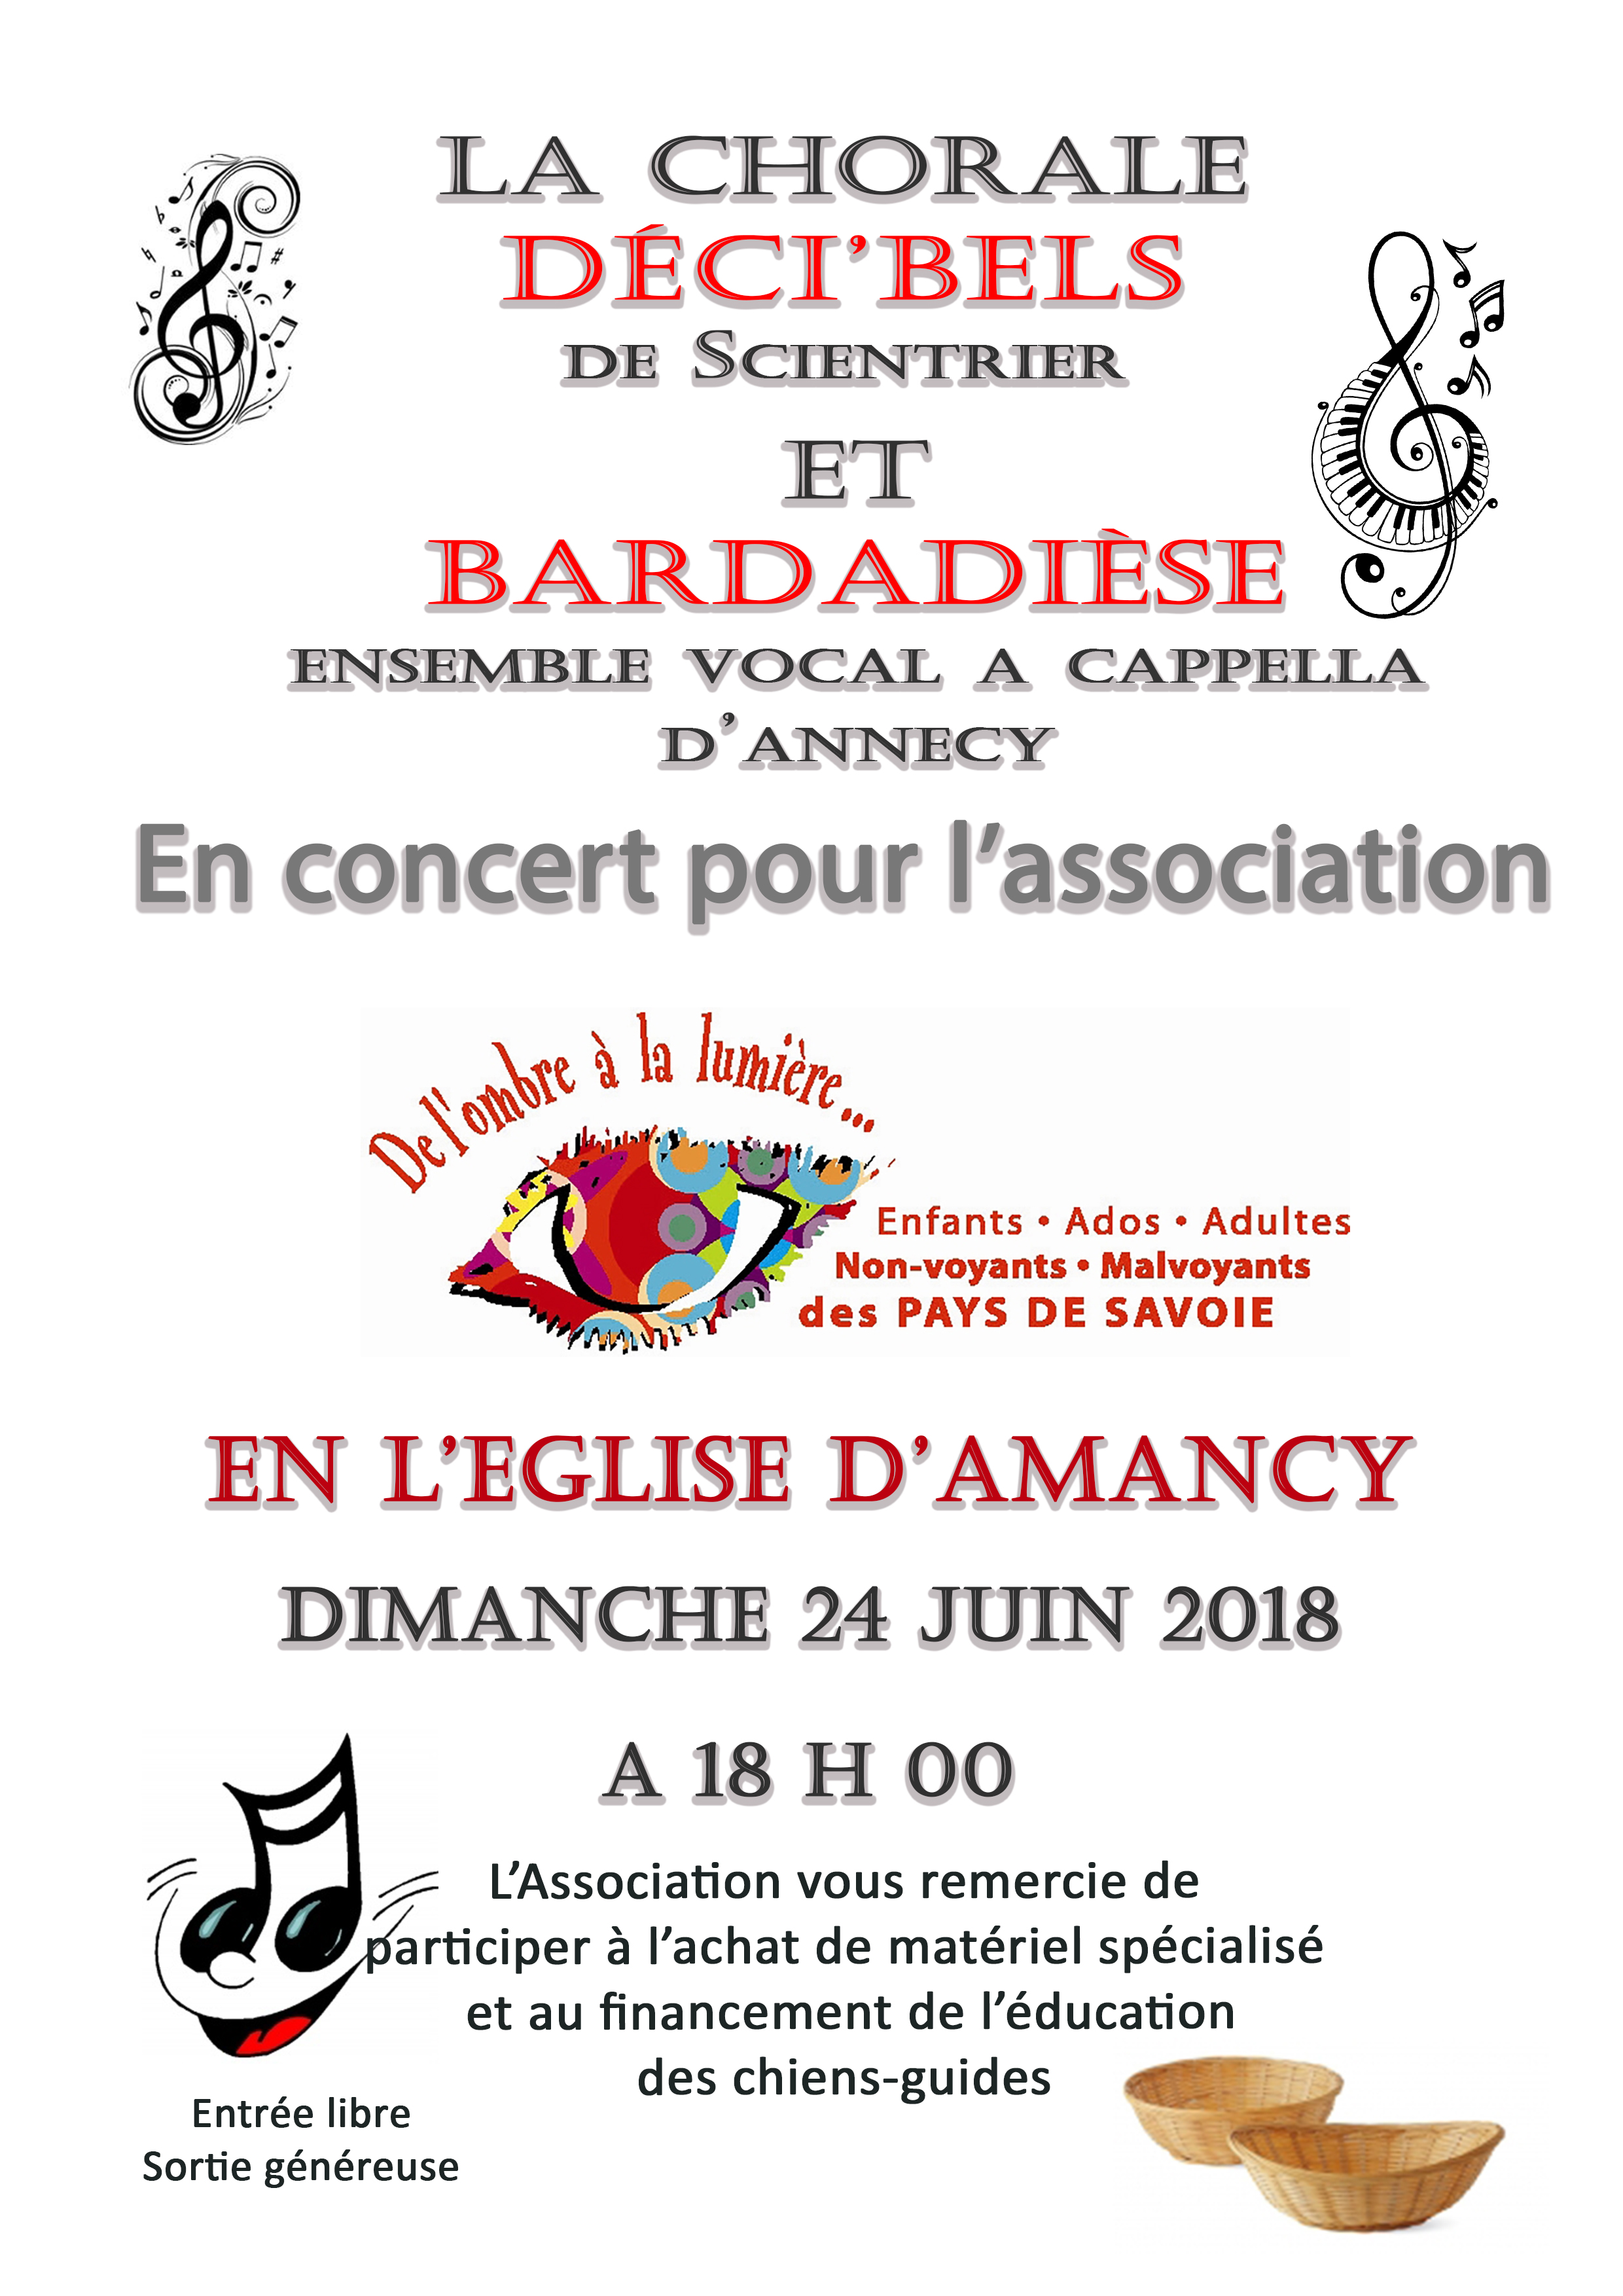 Affiche du concert de la chorale Déci'Bels de Scientrier avec le groupe vocal Bardadièse d'Annecy